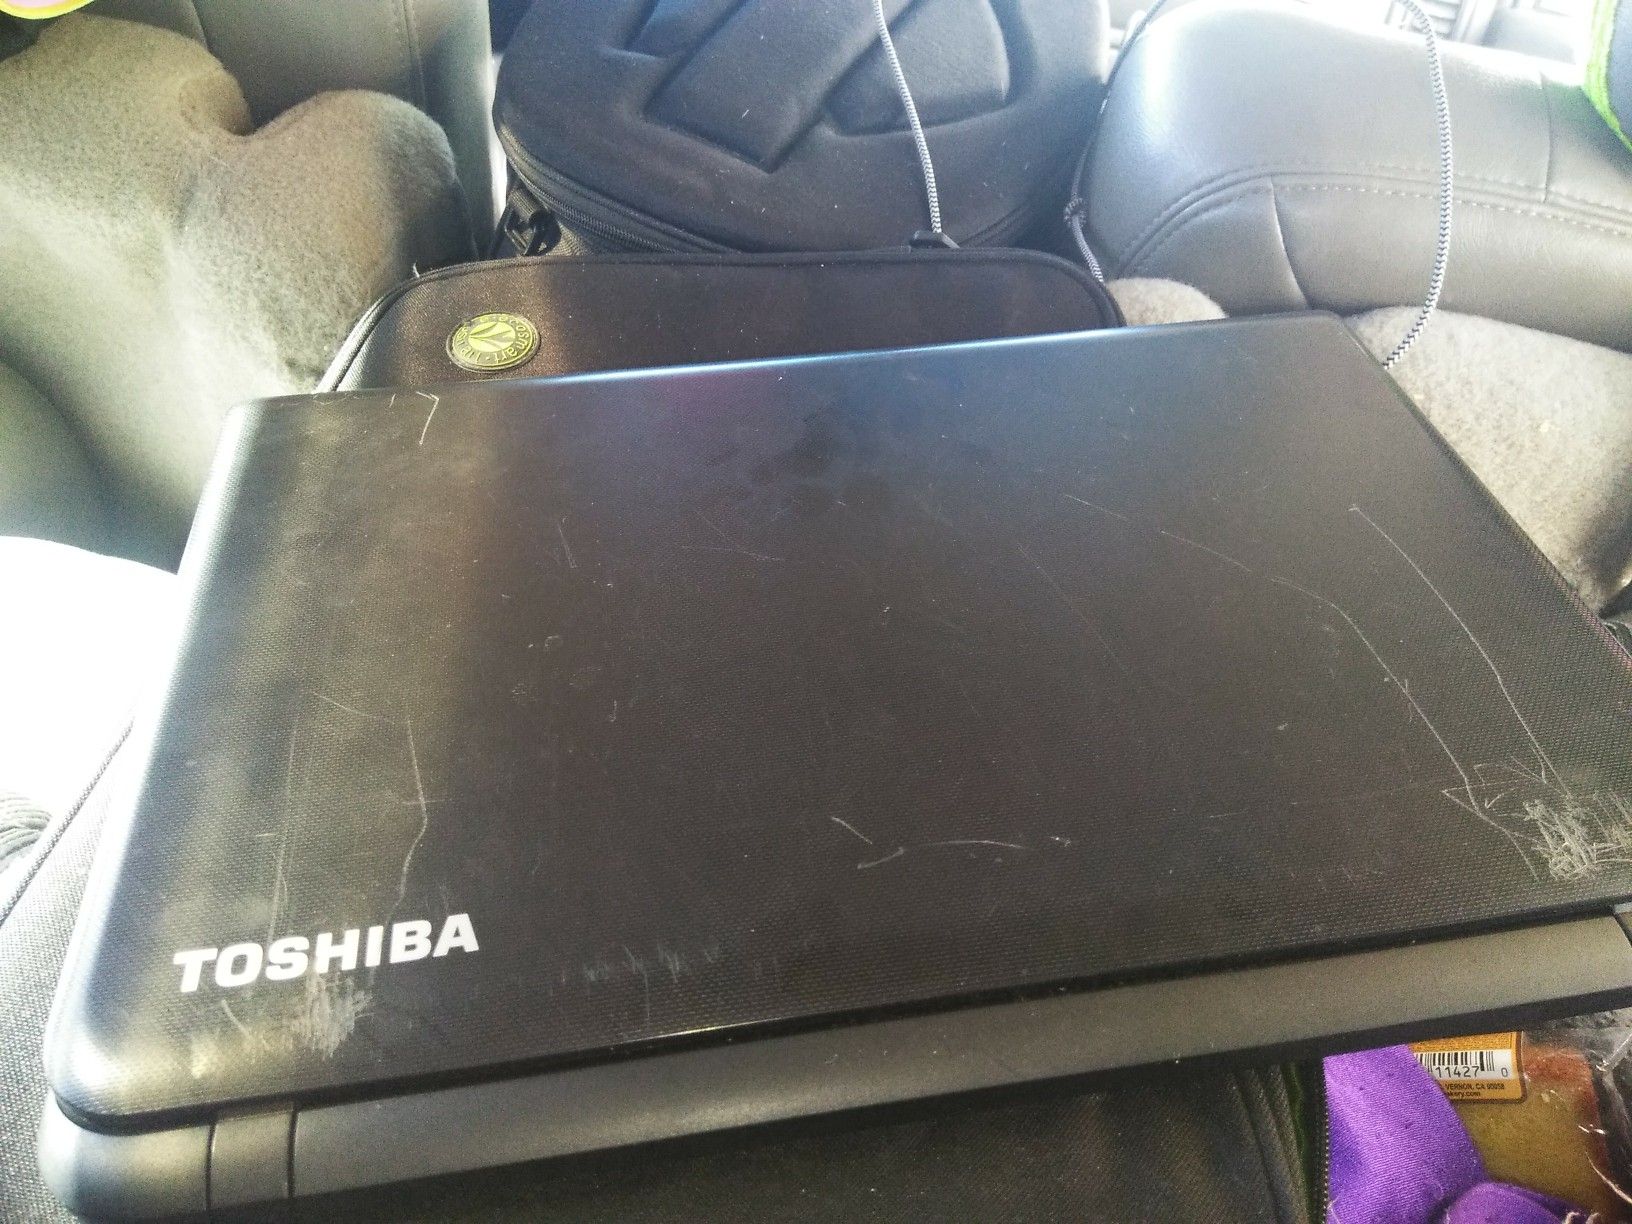 Toshiba Satellite Touch Screen Laptop